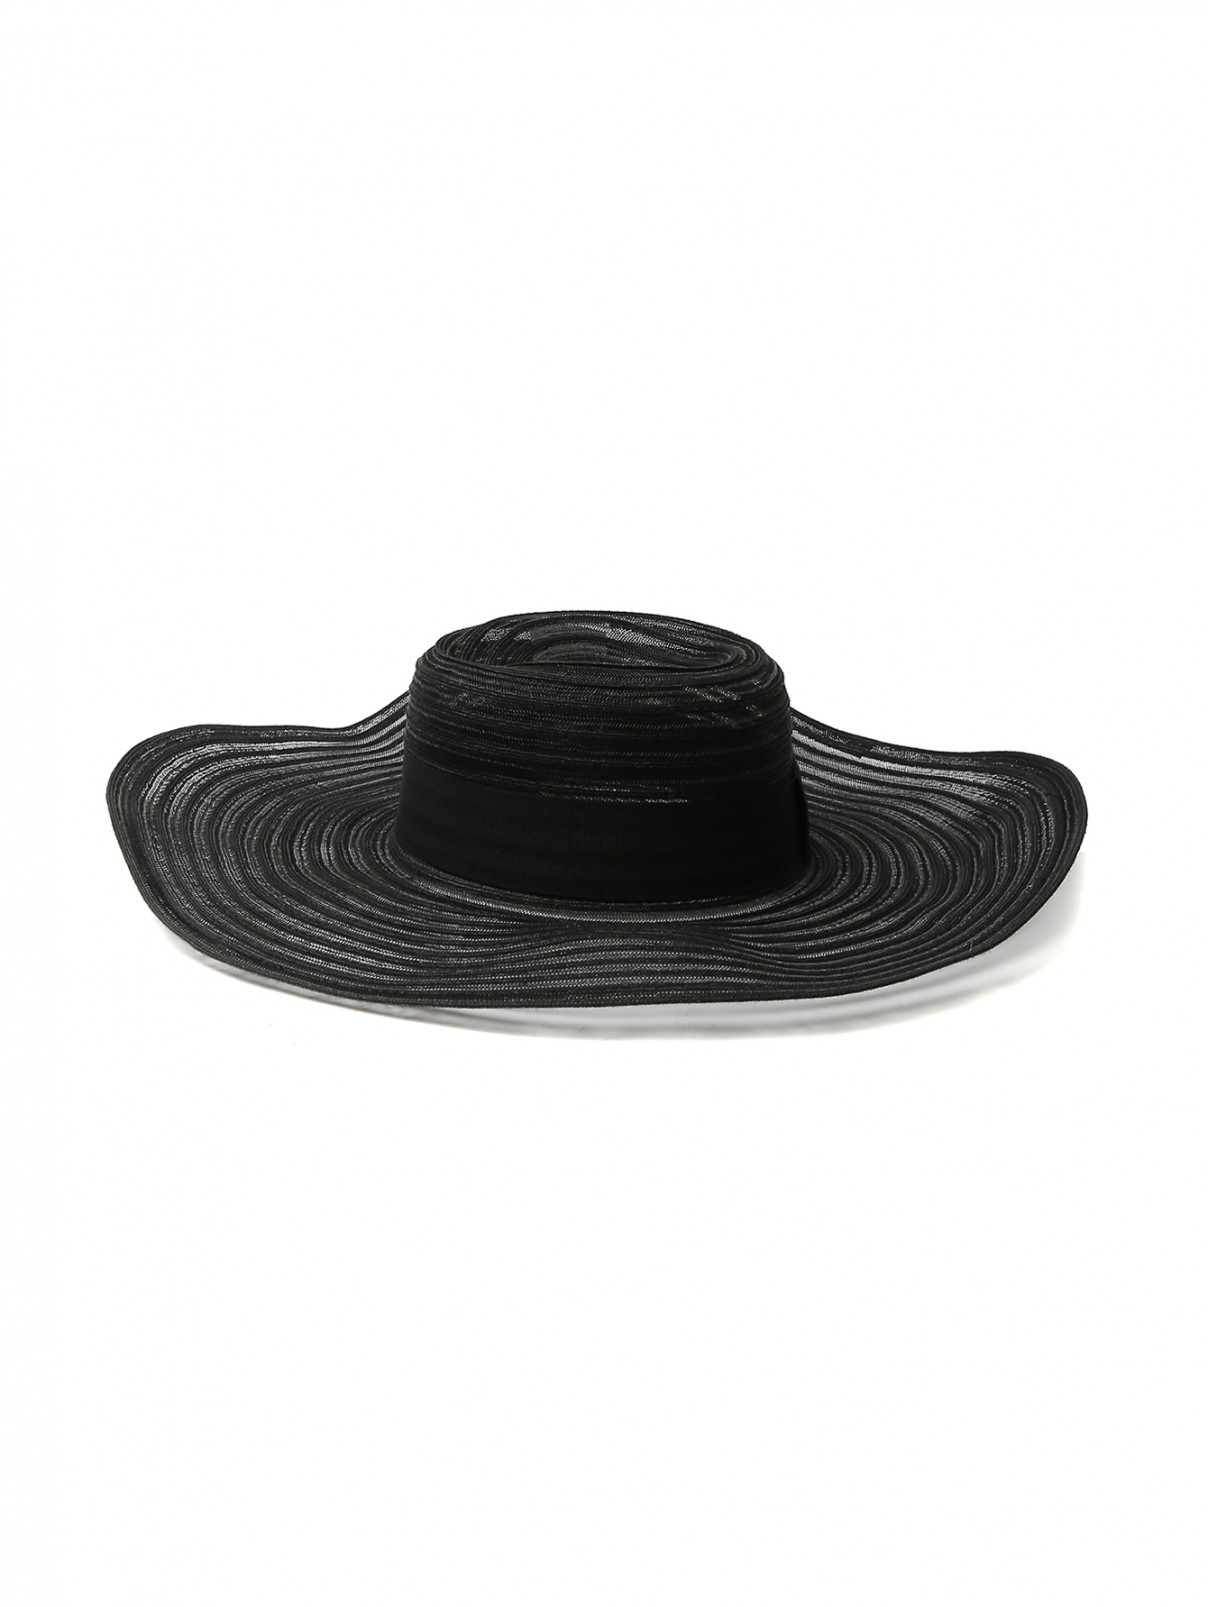 Шляпа полупрозрачная с широкими полями Persona by Marina Rinaldi  –  Общий вид  – Цвет:  Черный